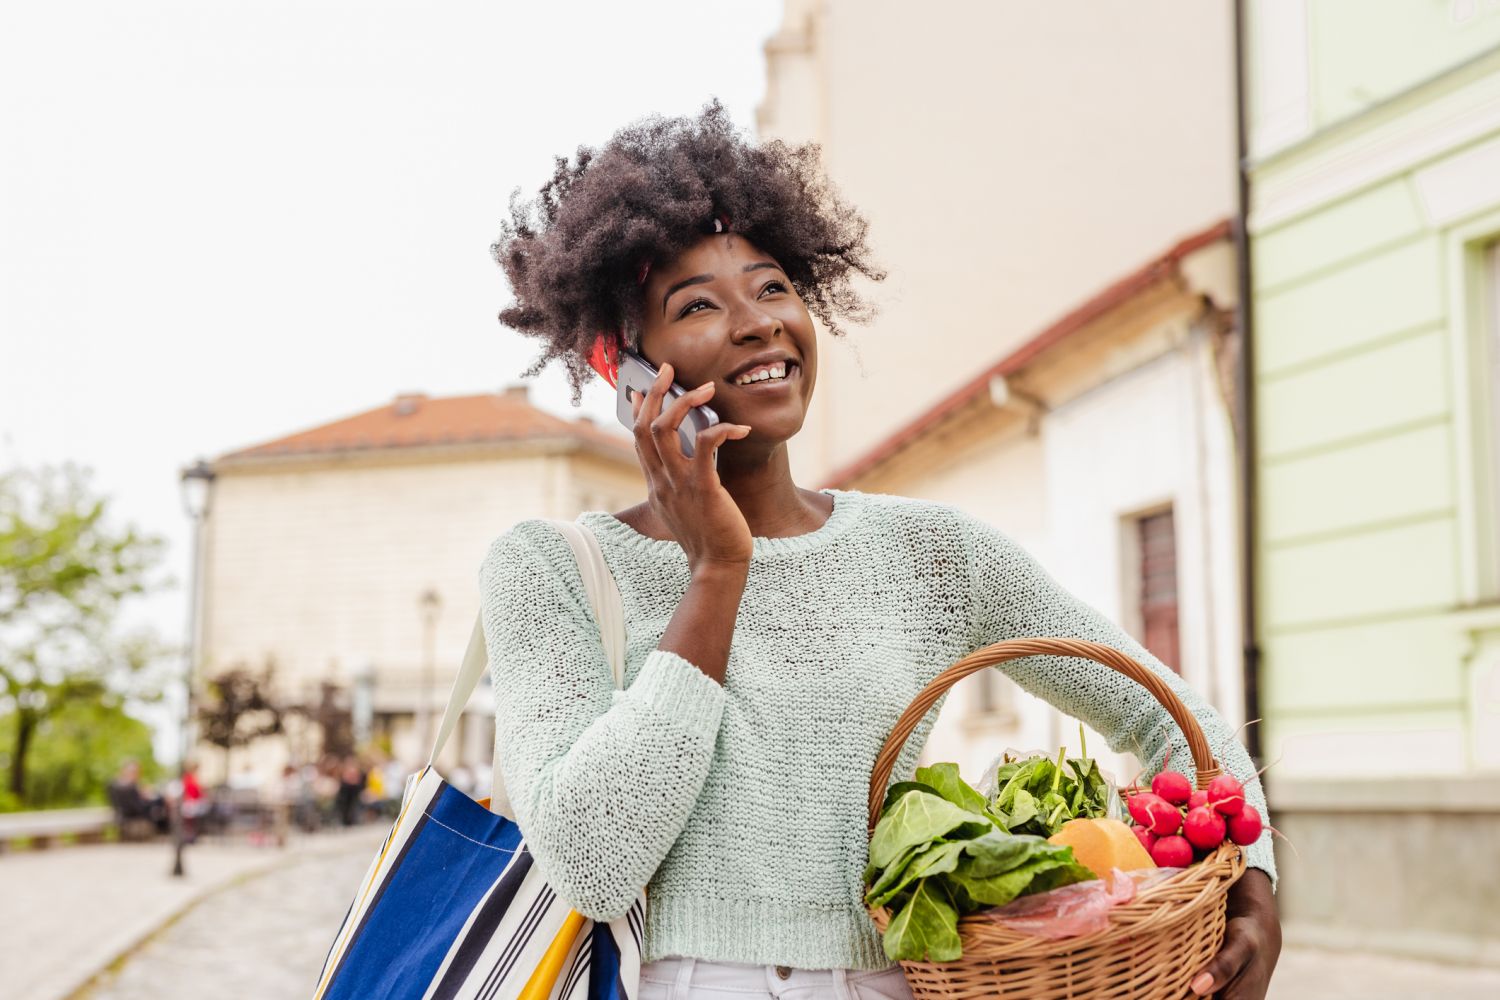 Eine Frau trägt einen Korb mit frischen Lebensmitteln, während sie telefoniert. 